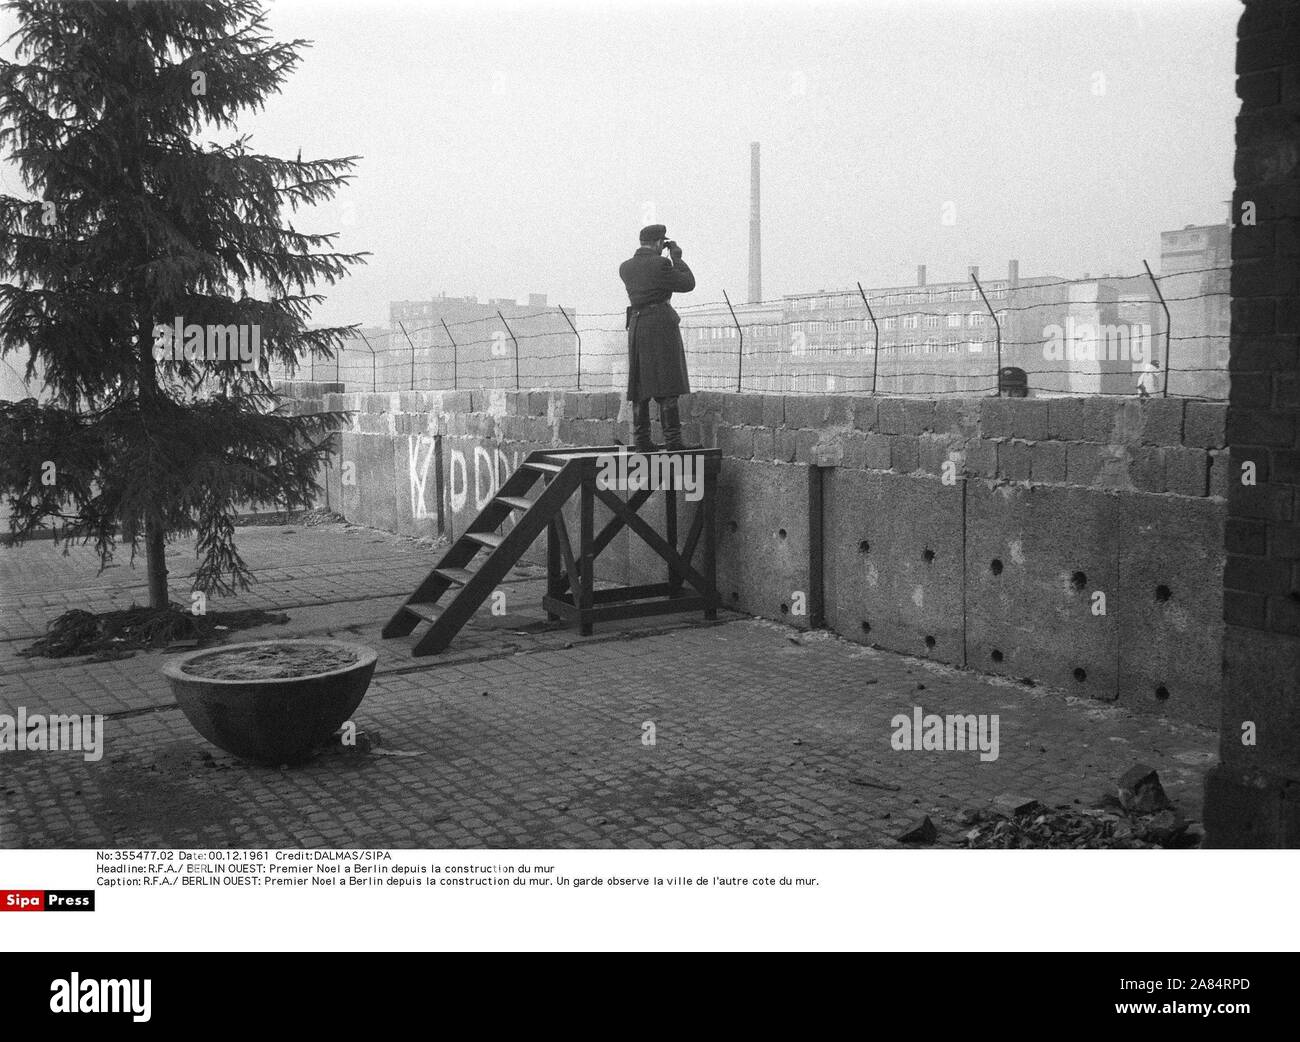 Quattro mesi dopo il muro di Berlino è andato fino, Berlino Ovest e Berlino Est poliziotti di osservare ogni altra. Il 13 agosto 1961, la RDT (Repubblica Democratica Tedesca) ha iniziato a bloccare la Berlino Est e della RDT da Berlino ovest da un muro chiamato 'l'anti-fascista parete di protezione' ostacolando così tedeschi orientali per difetto all'Occidente. Berlino ovest, Germania ovest - 12/1989 12/1961 (DALMA / SIPA/IPA / Fotogramma, BERLINO OVEST - 2014-10-17) ps la foto può essere utilizzato nel rispetto del contesto in cui è stato preso e senza intento diffamatorio del decoro delle persone rappresentate editoriale solo di utilizzo Foto Stock